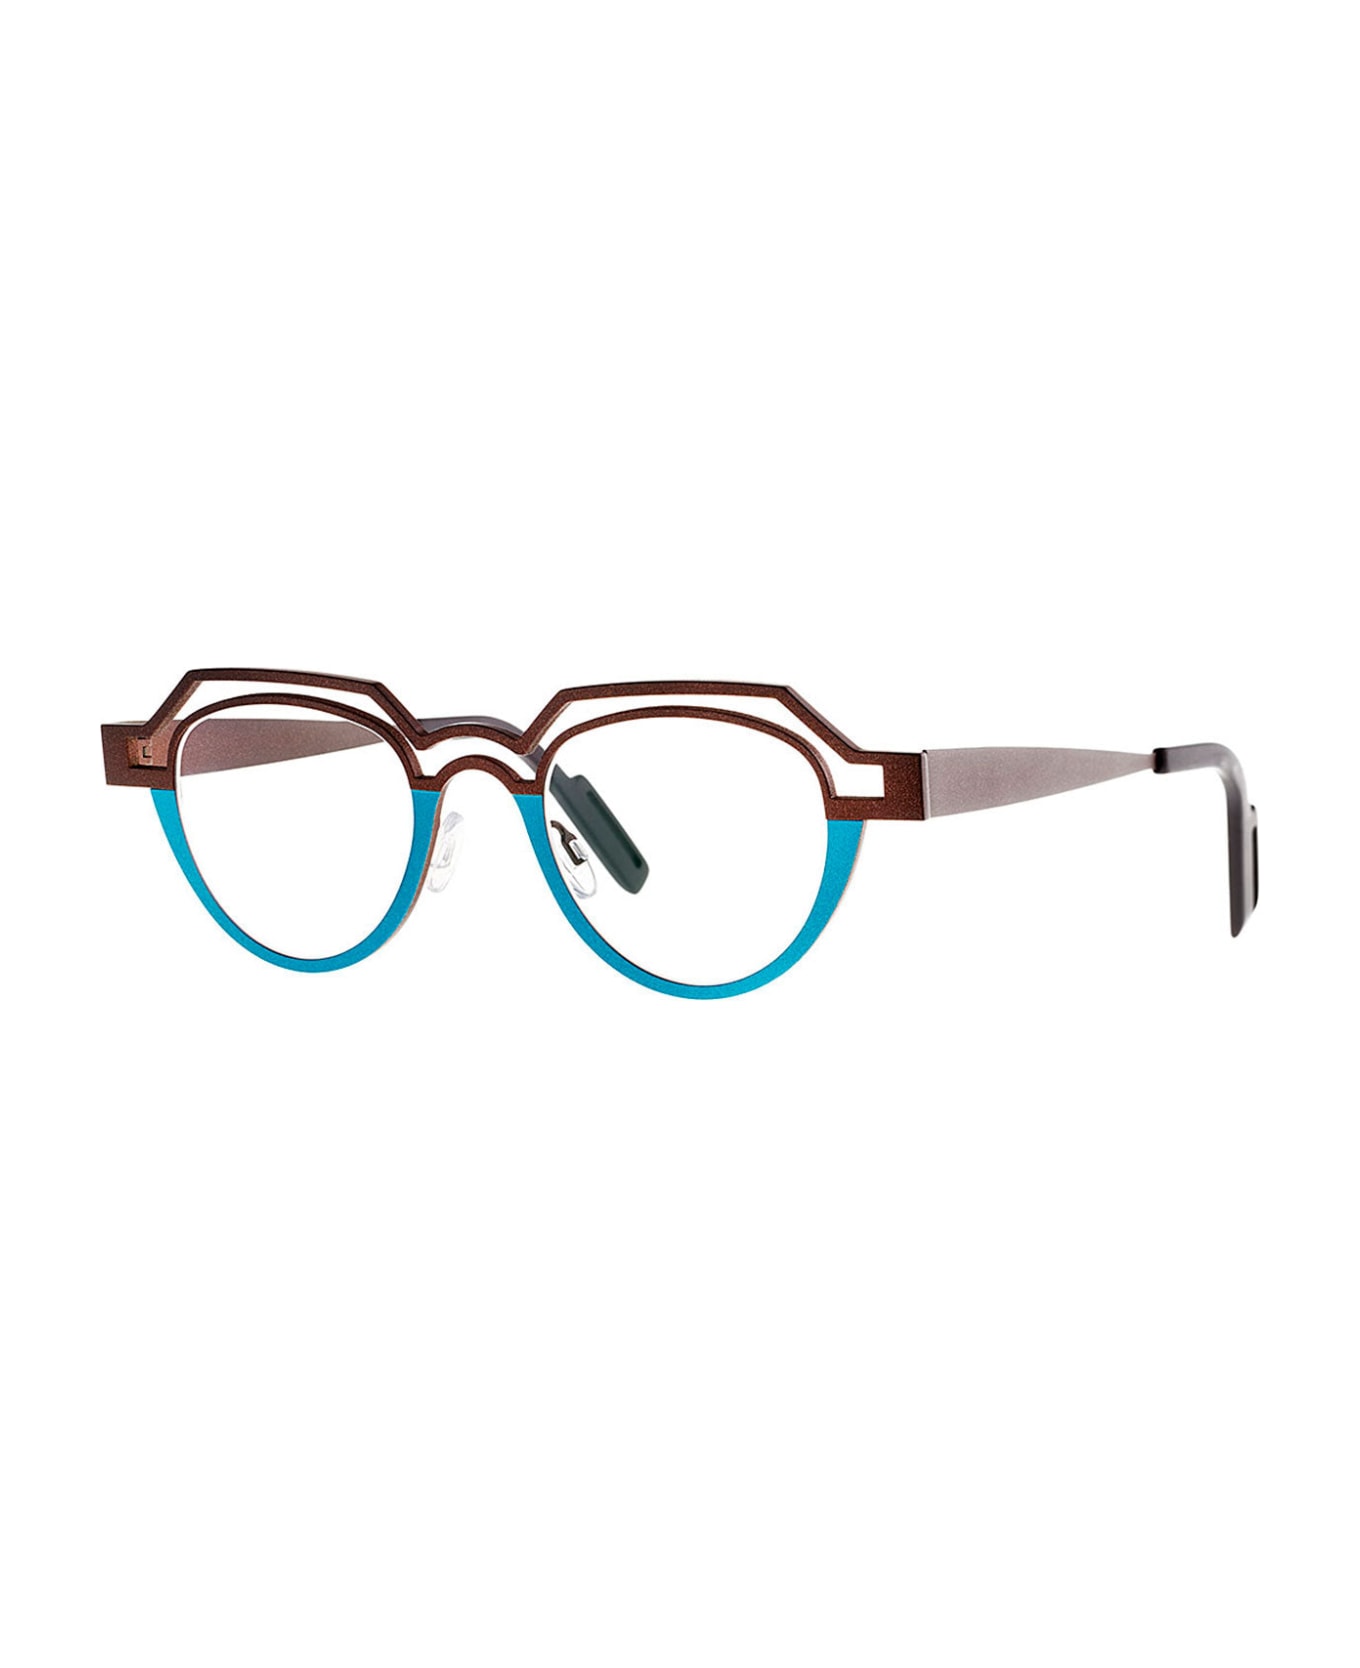 Theo Eyewear Perce 231 Glasses - brown/blue